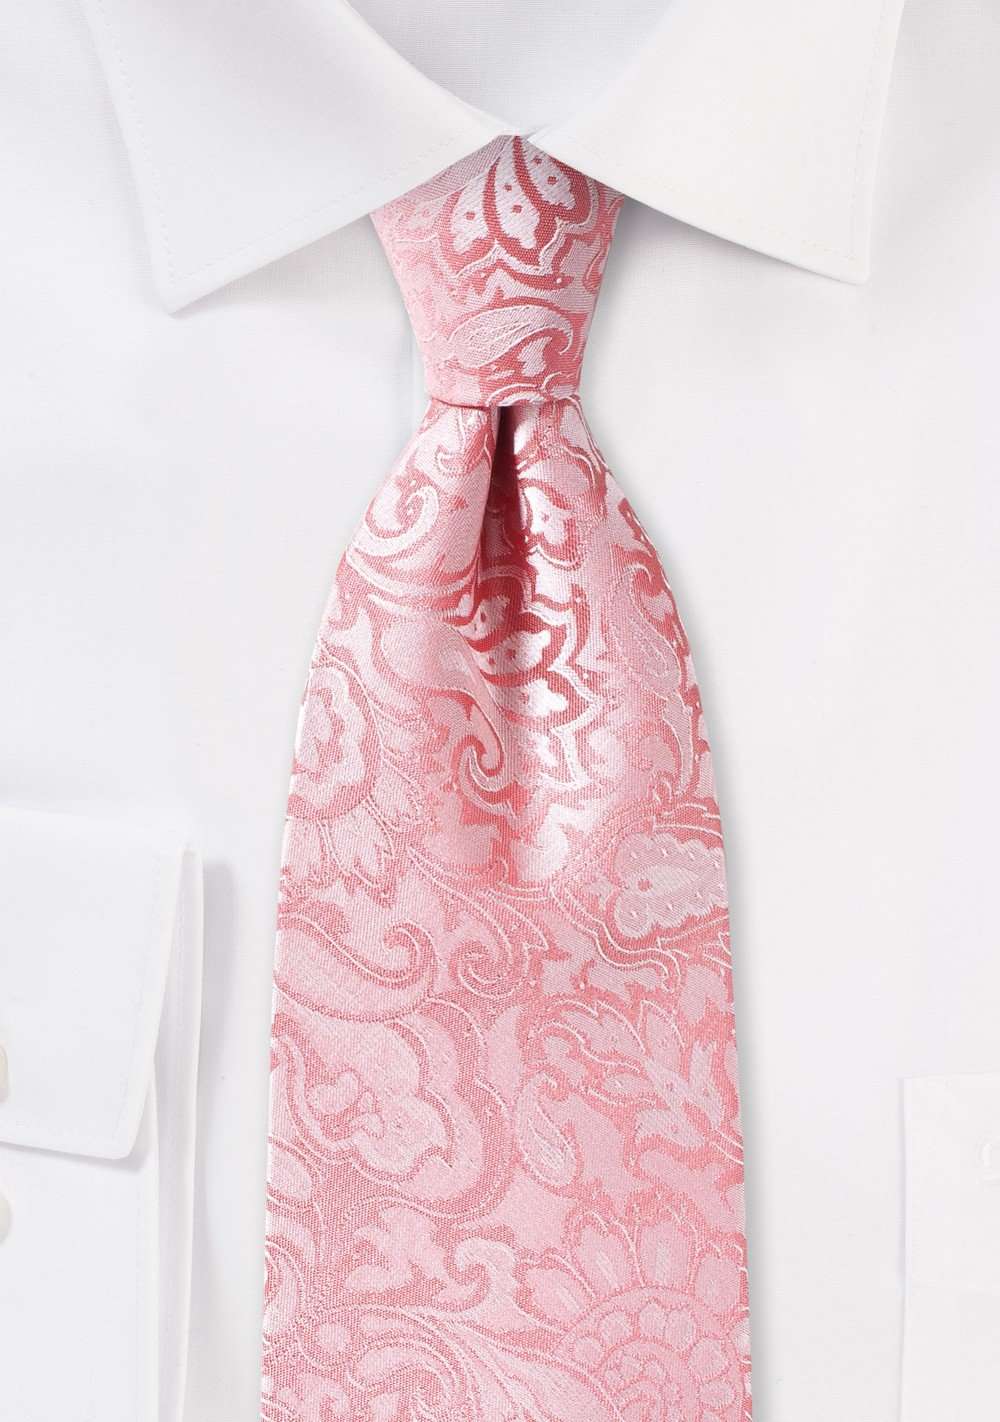 Tulip Floral Paisley Necktie - Men Suits